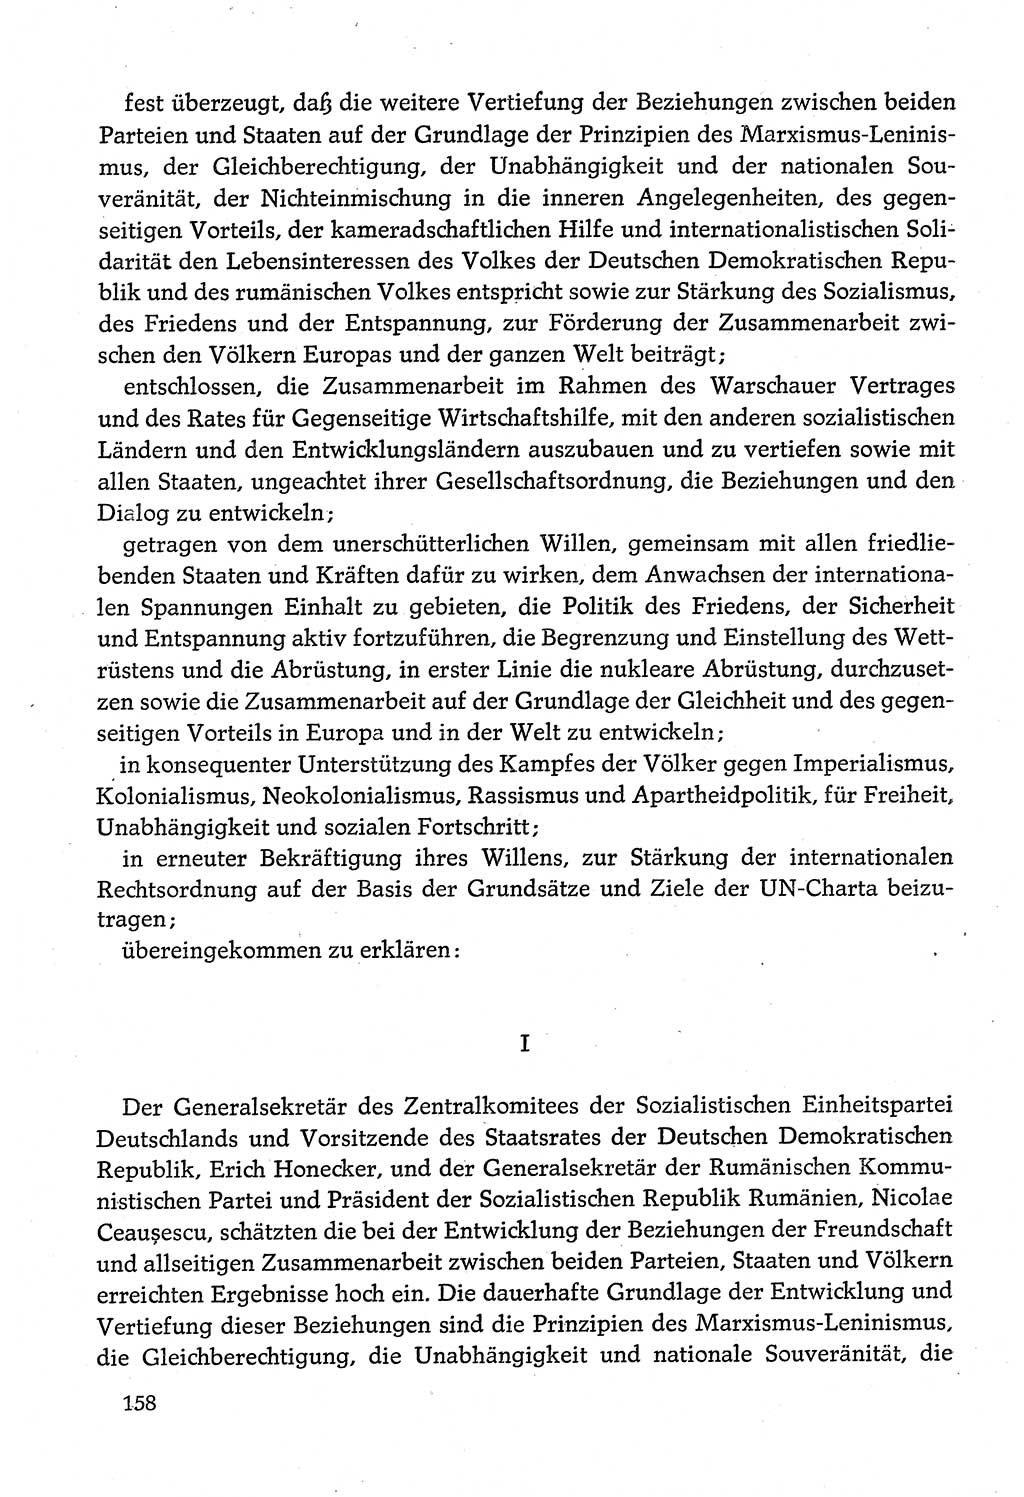 Dokumente der Sozialistischen Einheitspartei Deutschlands (SED) [Deutsche Demokratische Republik (DDR)] 1980-1981, Seite 158 (Dok. SED DDR 1980-1981, S. 158)